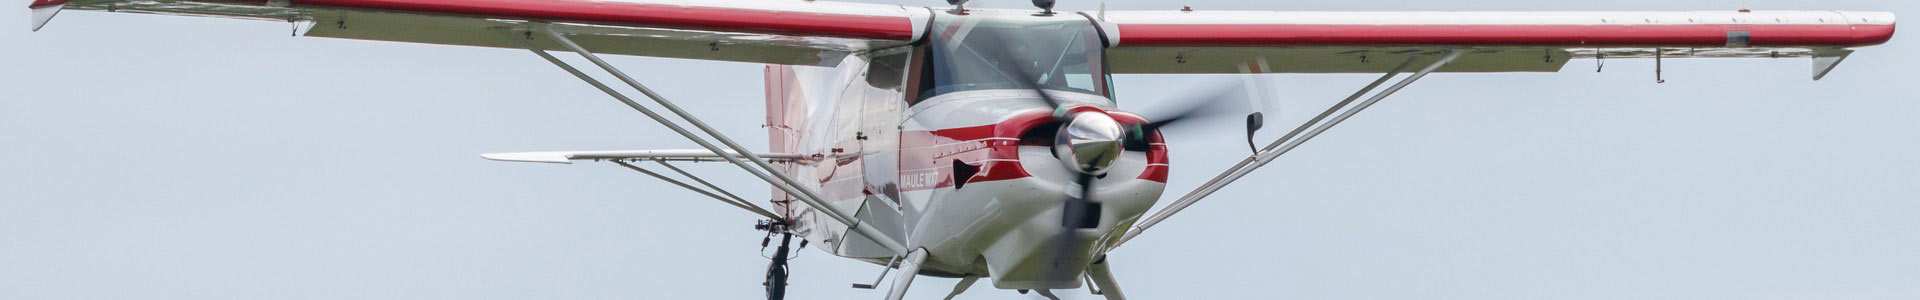 Luftfahrthaftpflichtversicherung Einmotorige und Segelfugzeuge